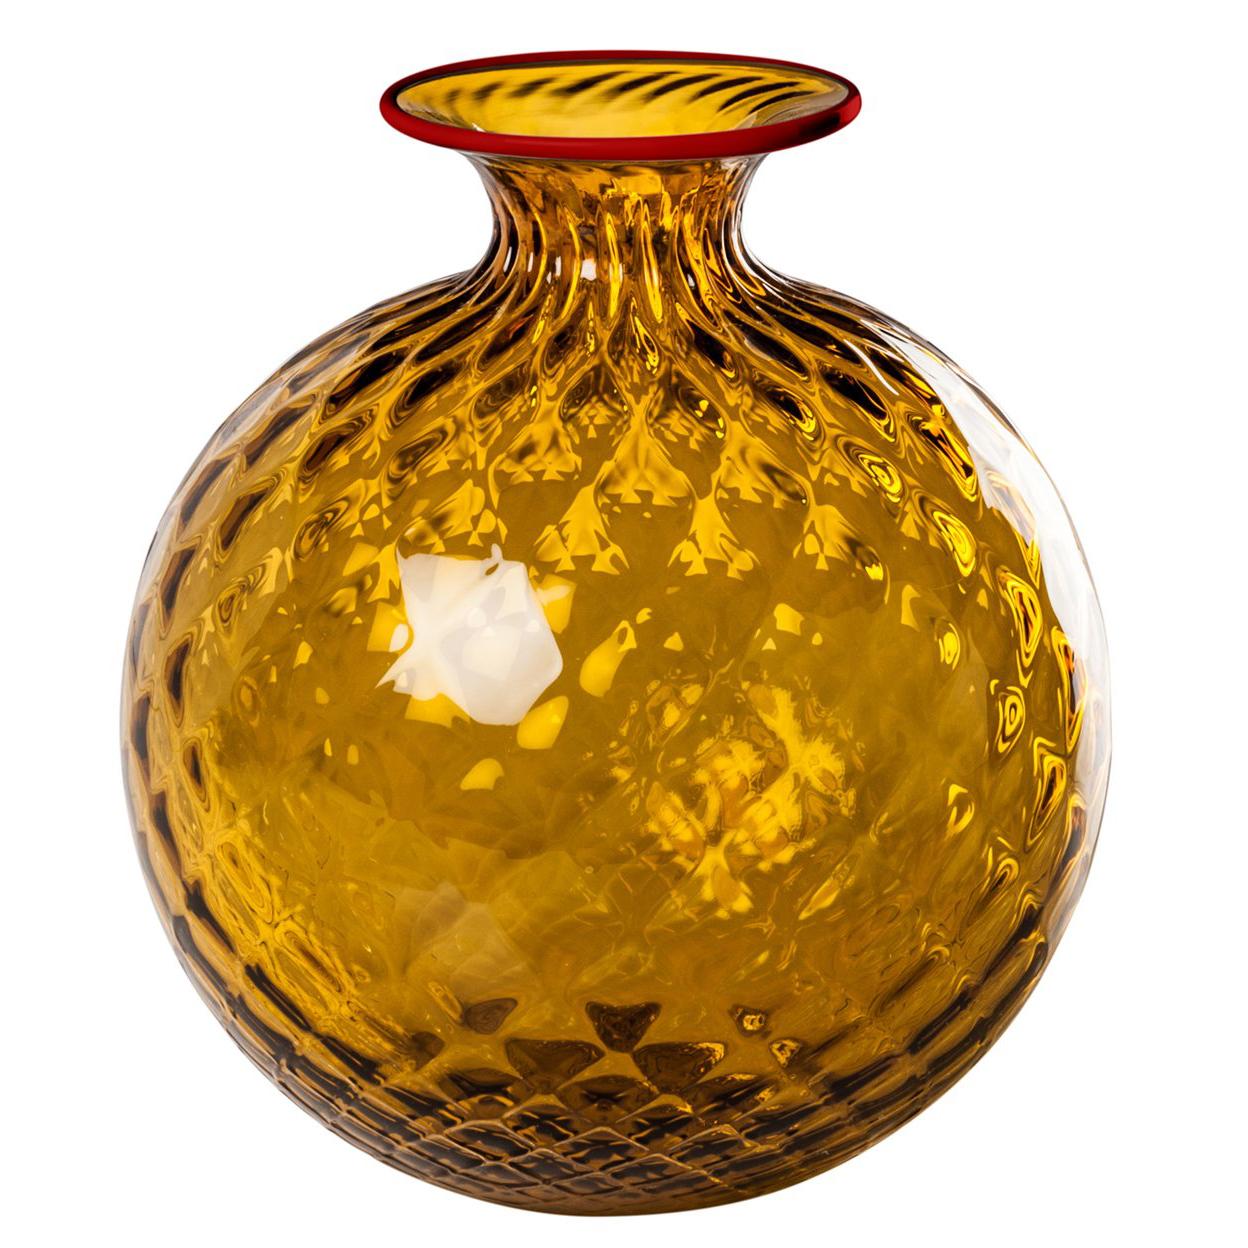 Monofiore Balaton Glass Vase in Topaz with Red Thread Rim by Venini